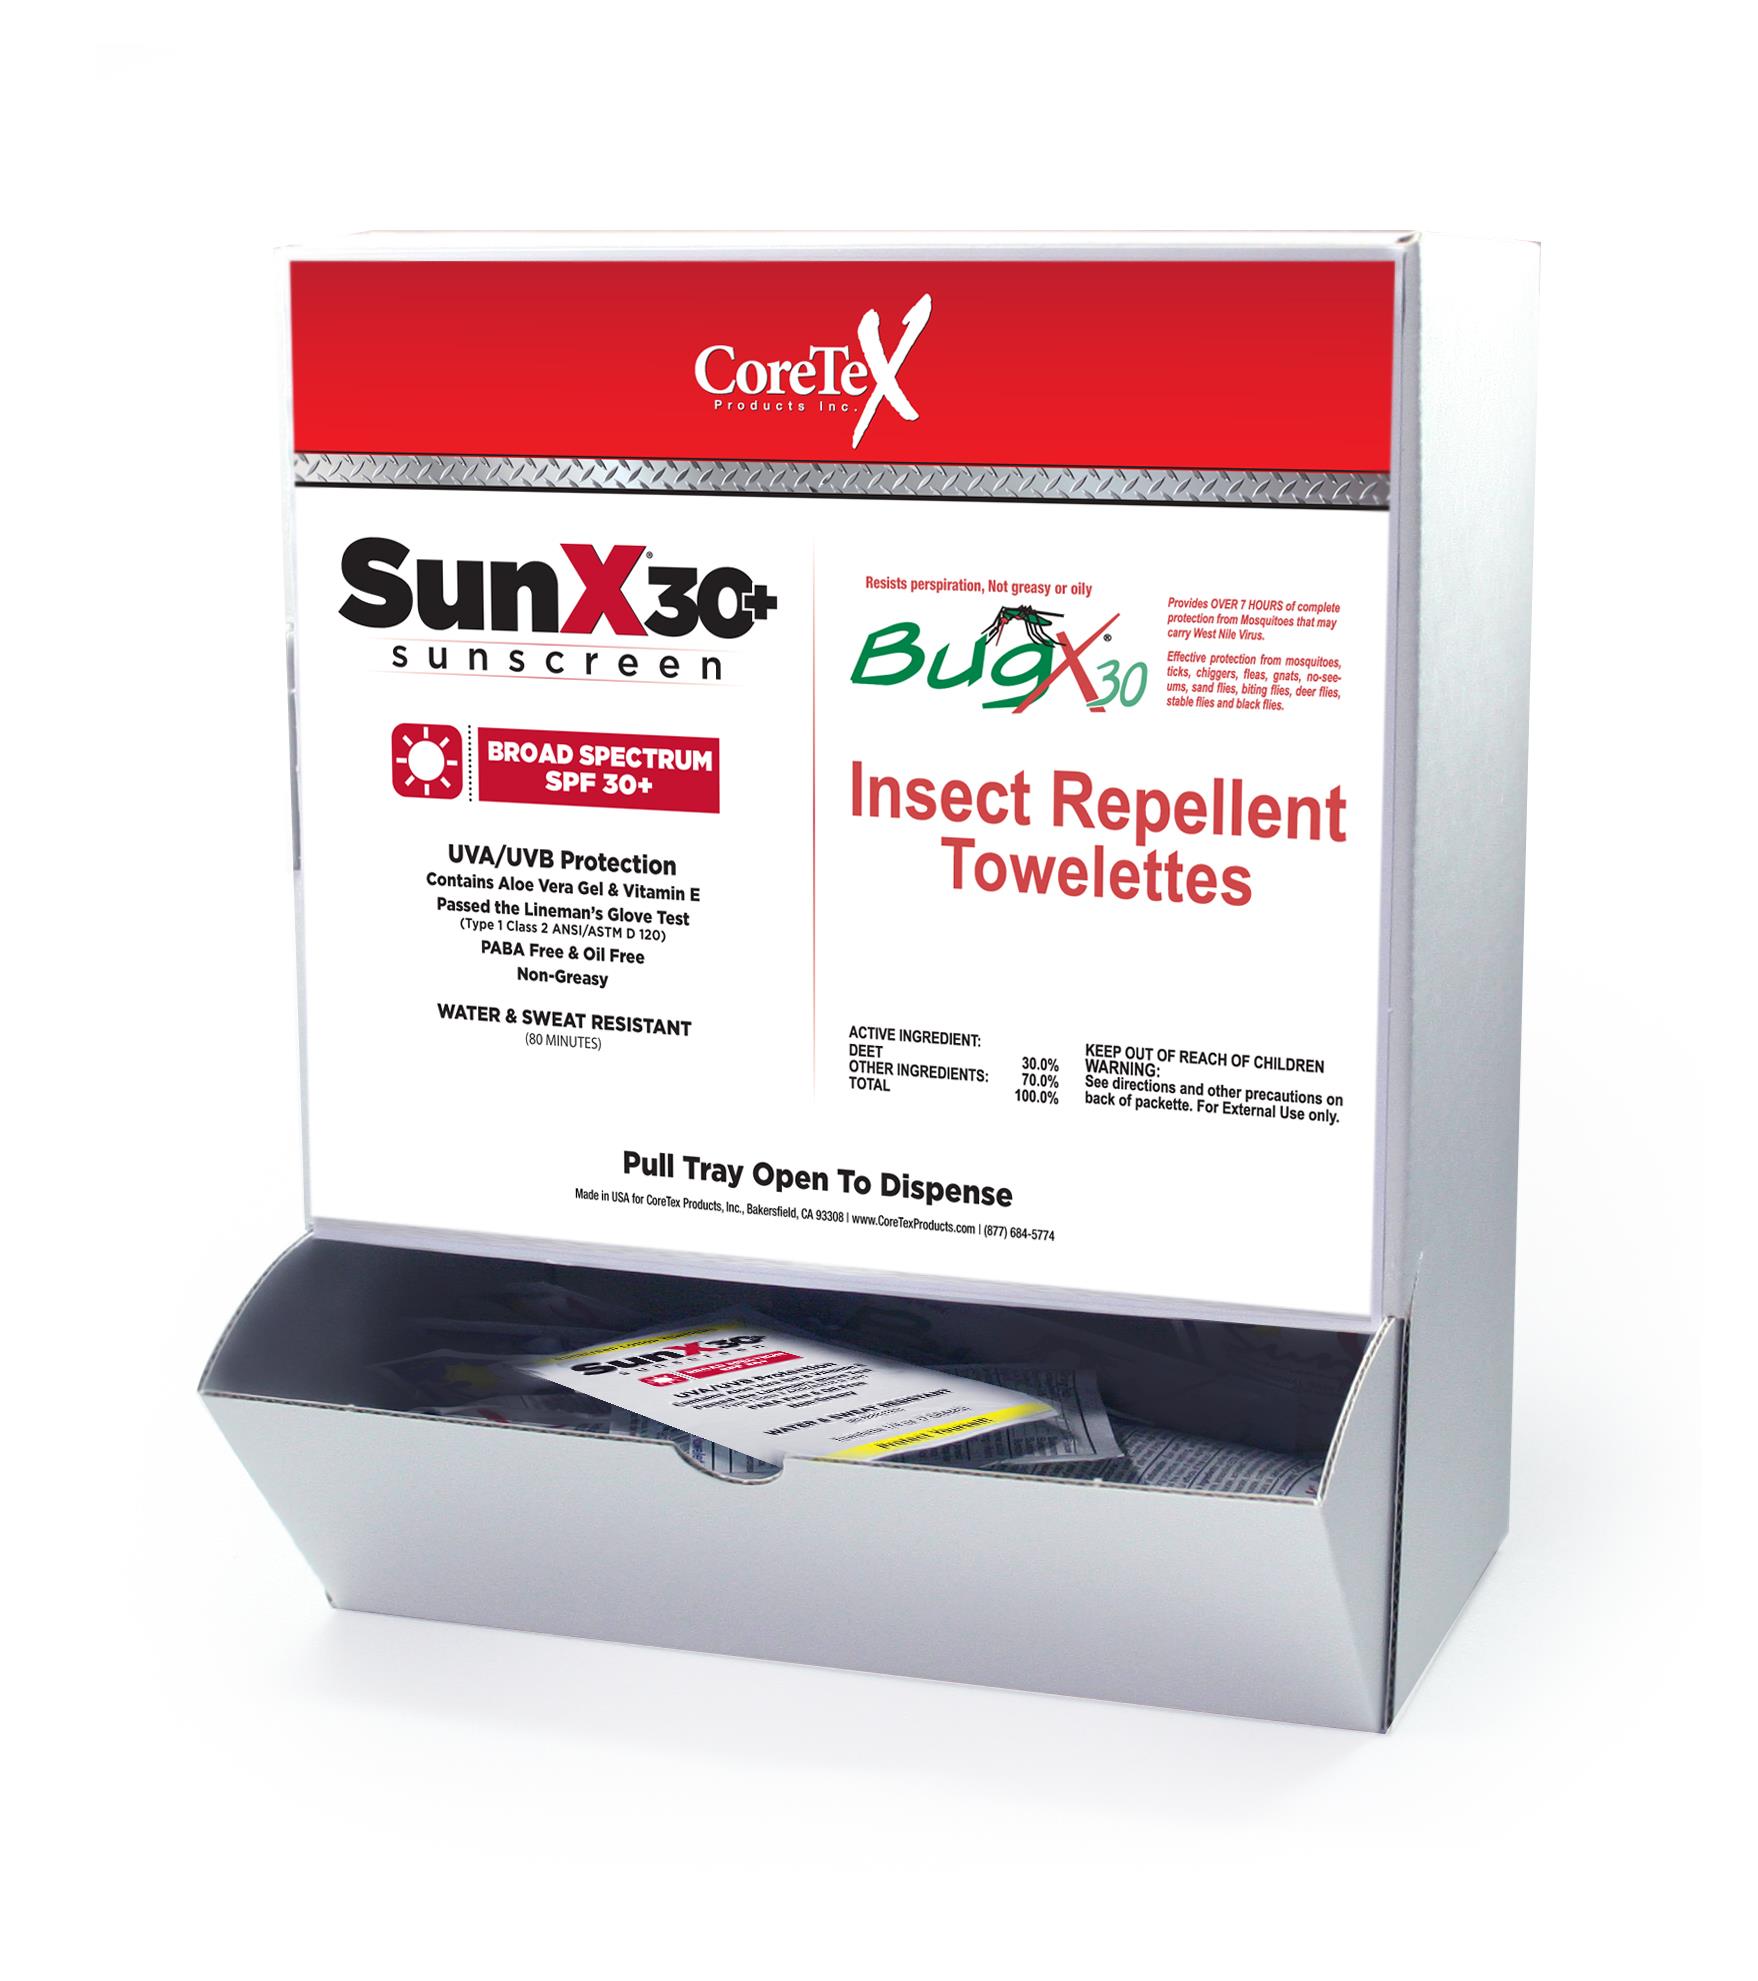 SUNX SPF 30+ AND BUGX 30 COMBO BOX - Sunscreen